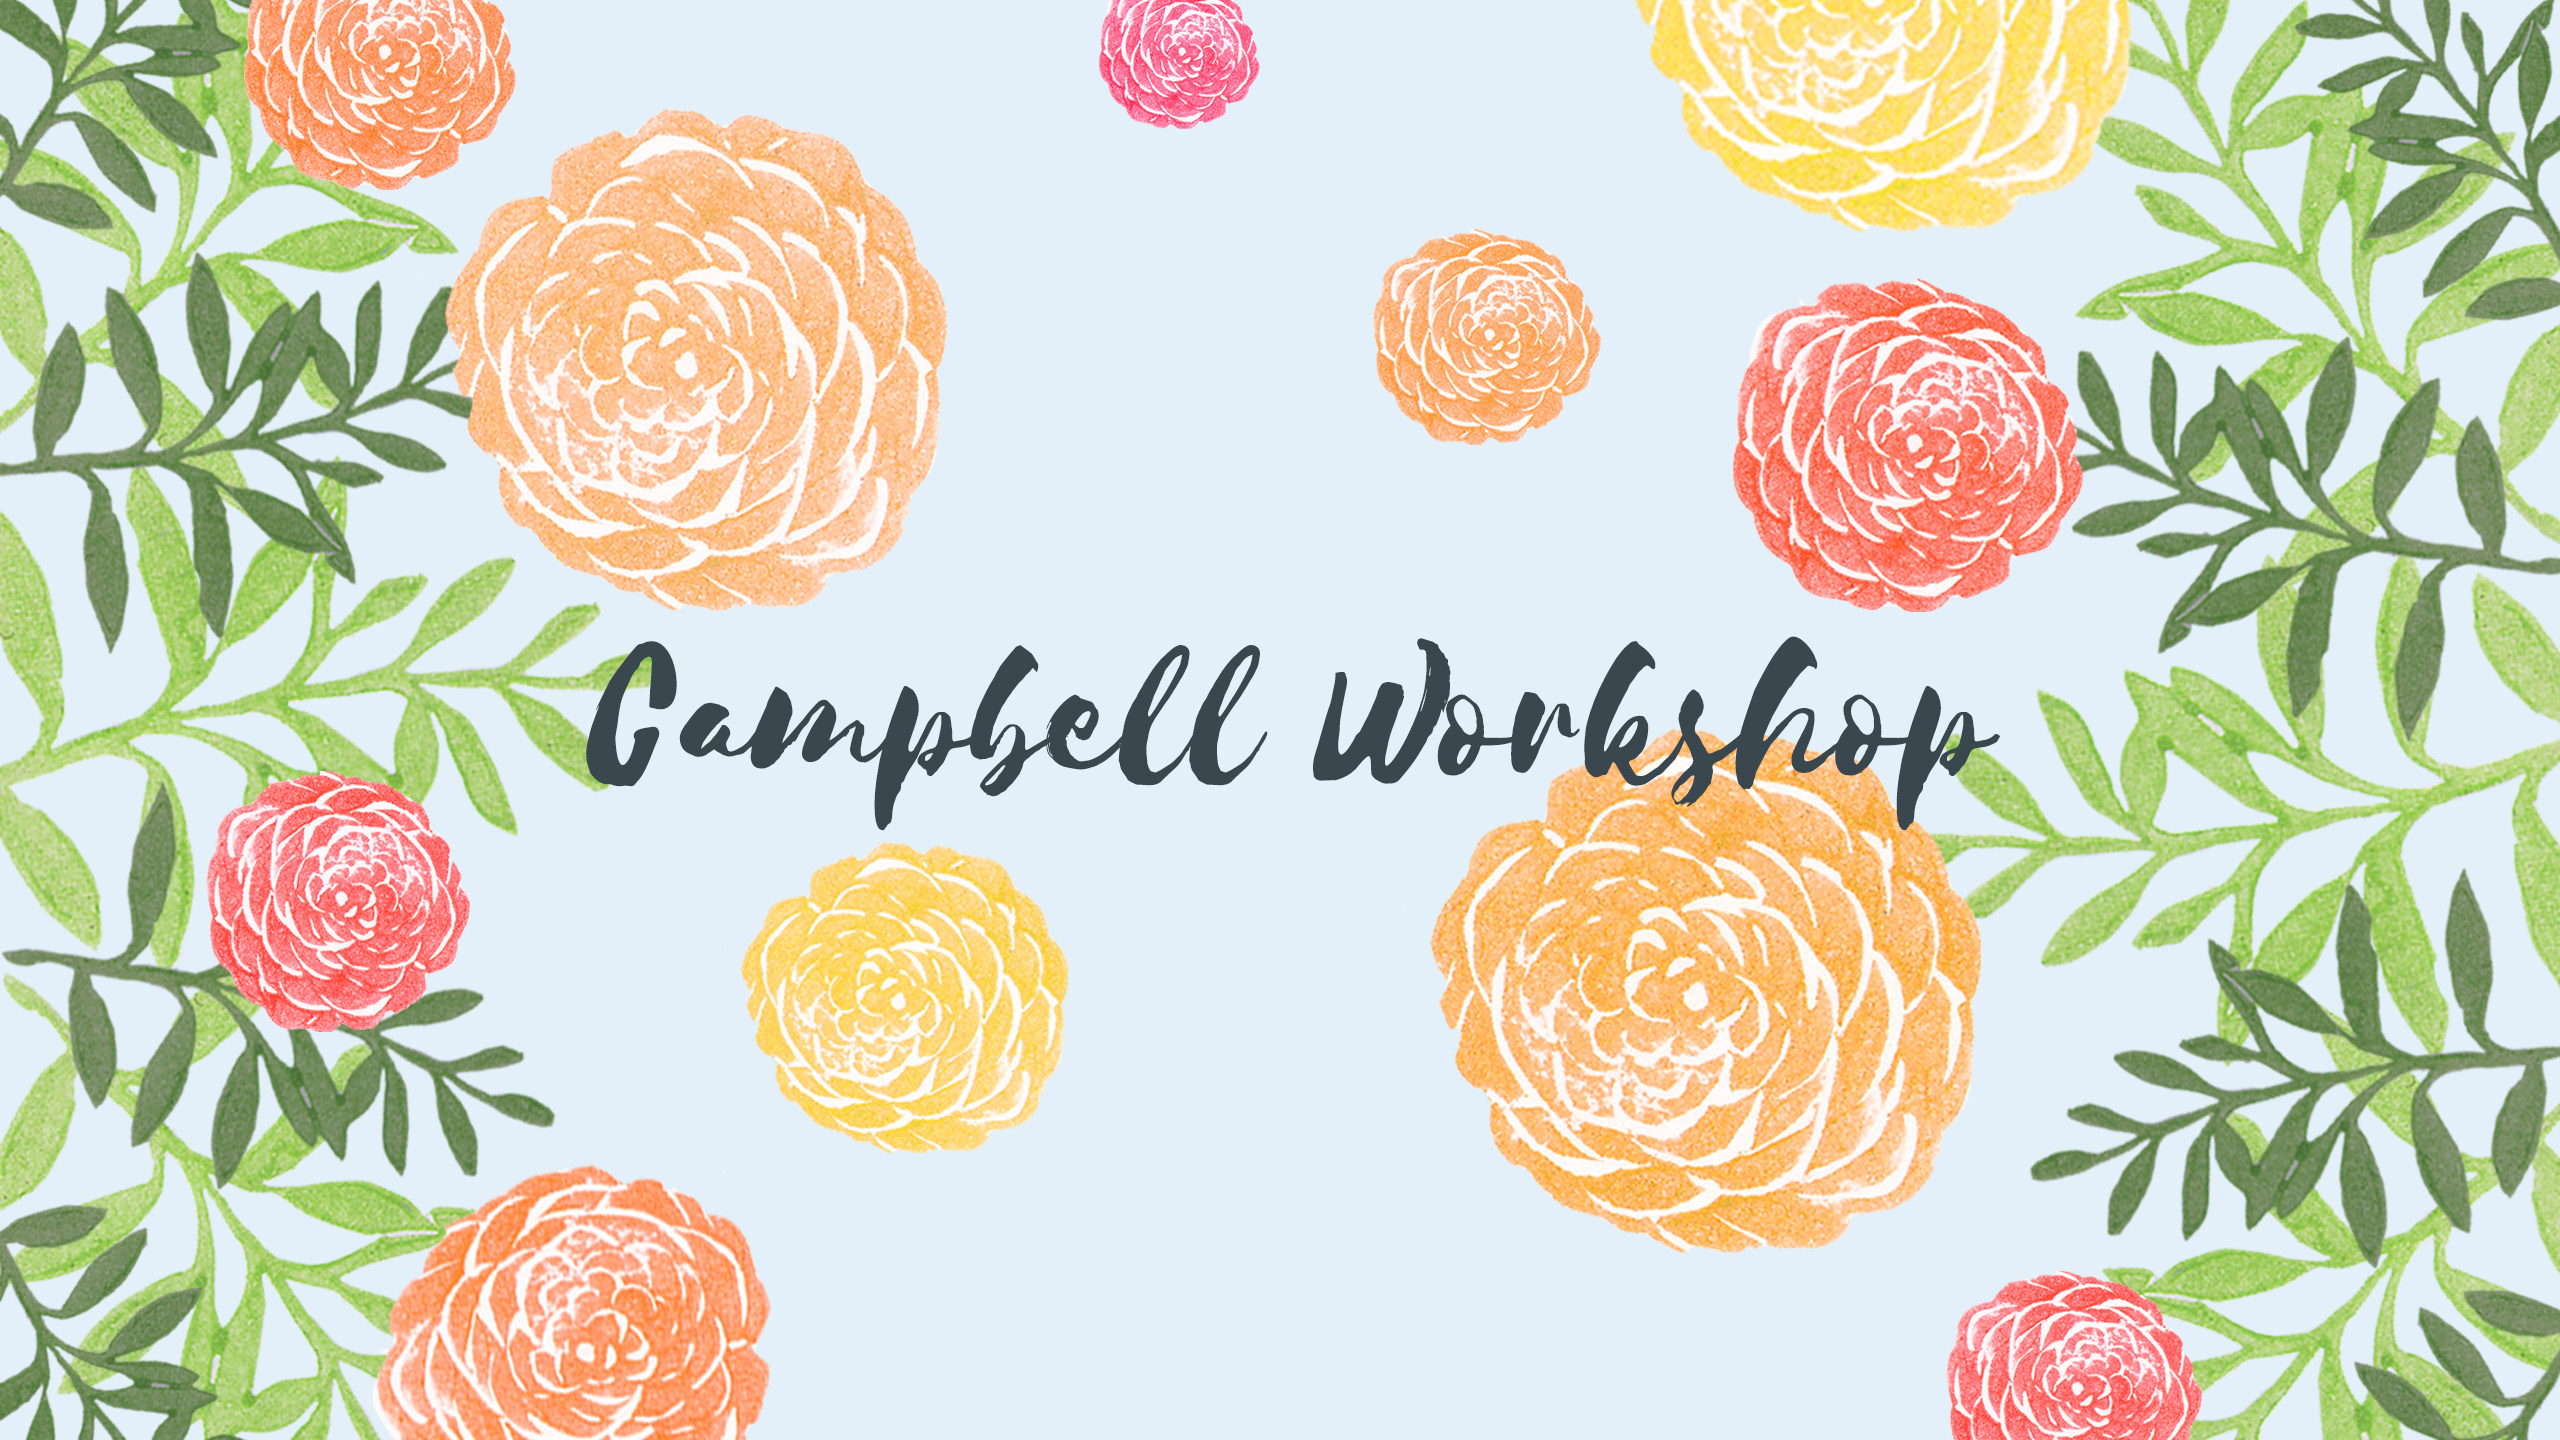 Campbell Workshop banner image